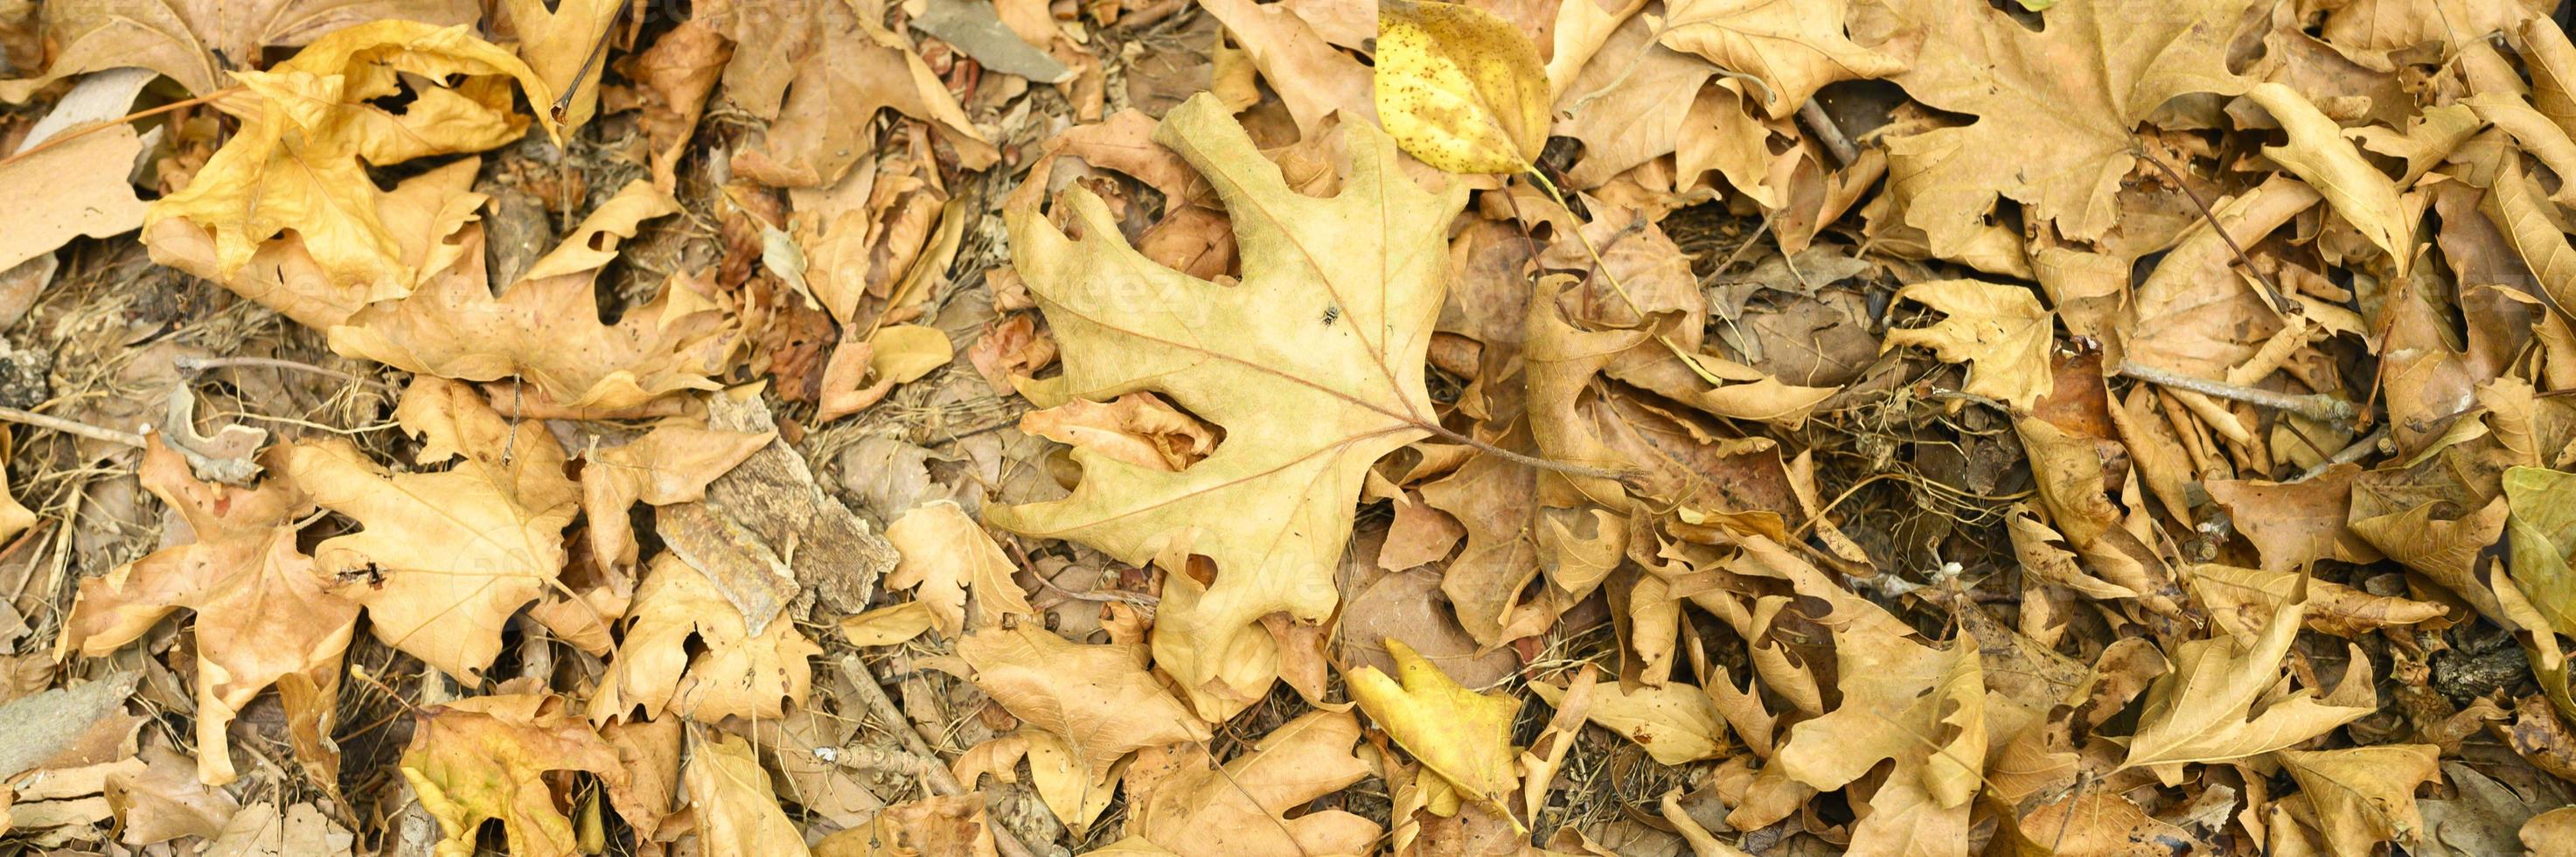 plano de fundo texturizado de folhas secas de outono caídas de bordo foto